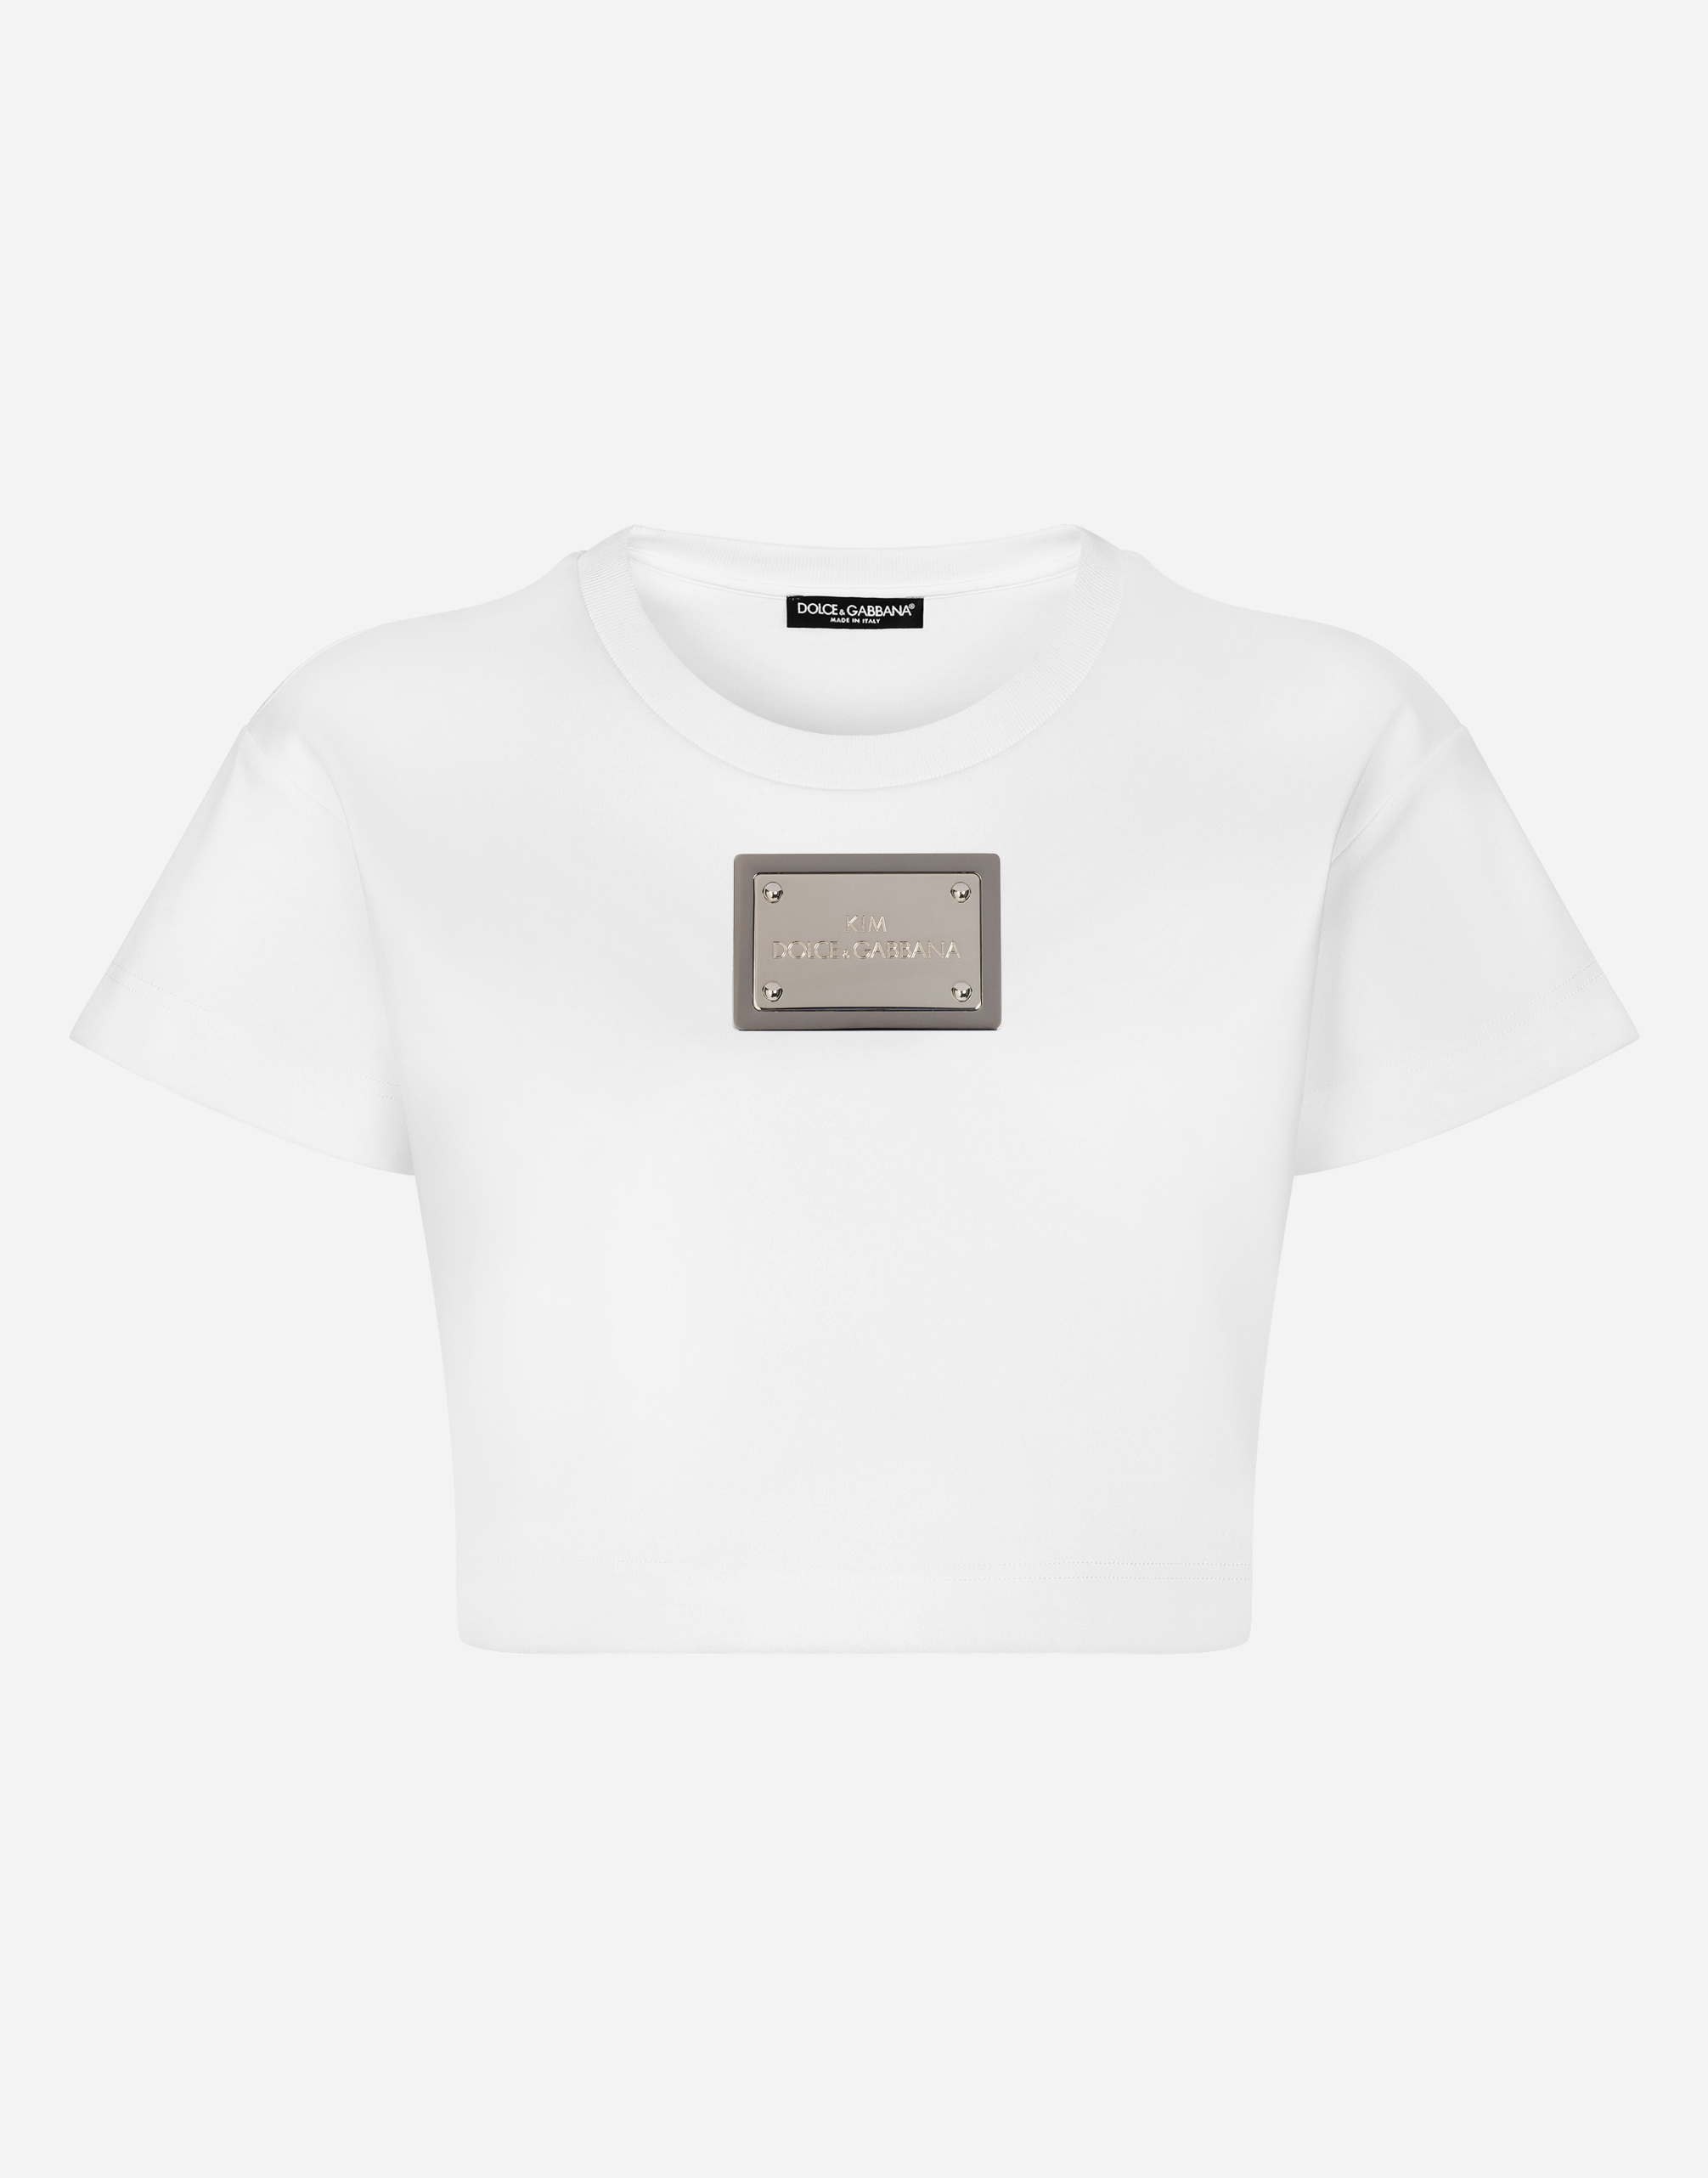 KIM DOLCE&GABBANA Cropped T-shirt with “KIM Dolce&Gabbana” tag